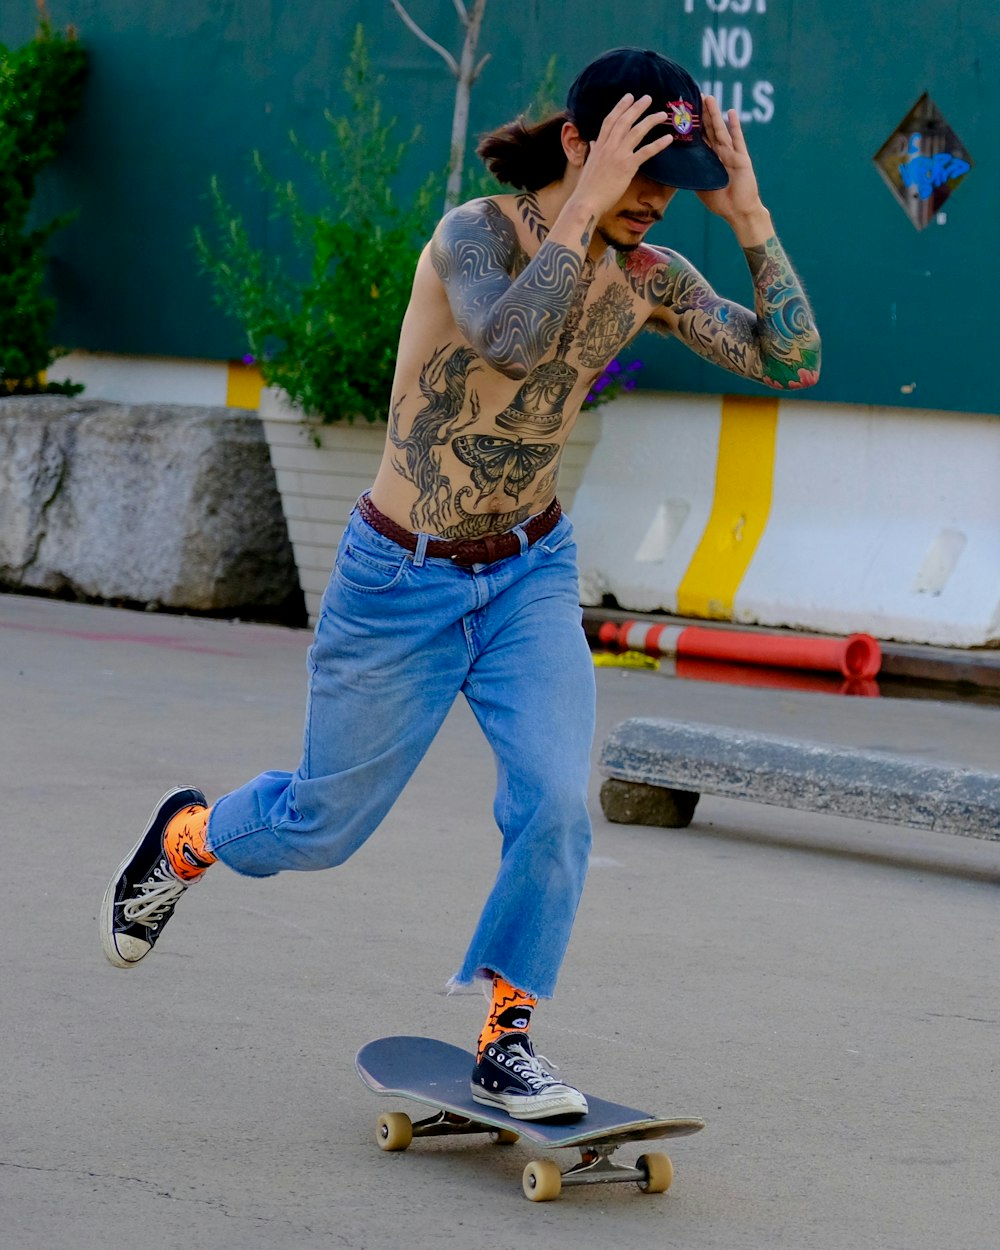 man wearing blue jeans riding on skateboard